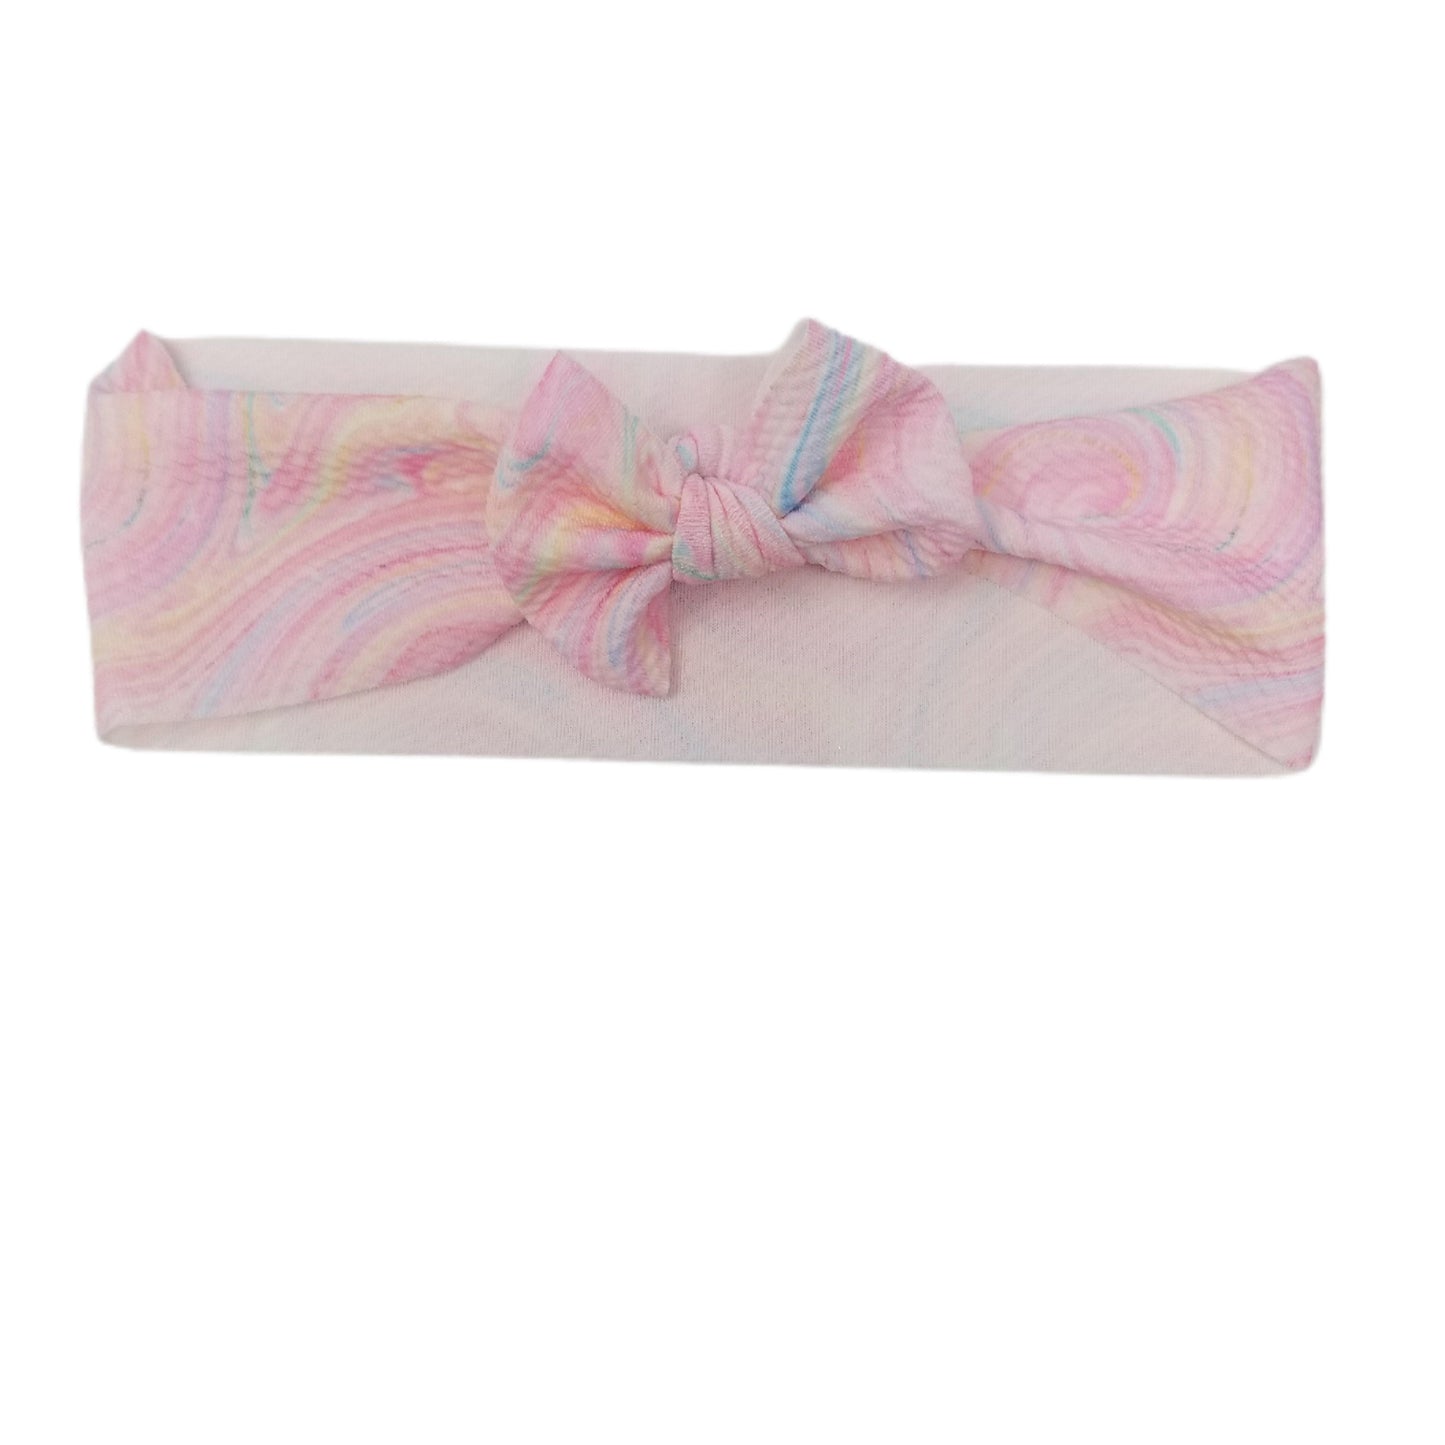 Twirly Girl Fabric Bow Headwrap 3"